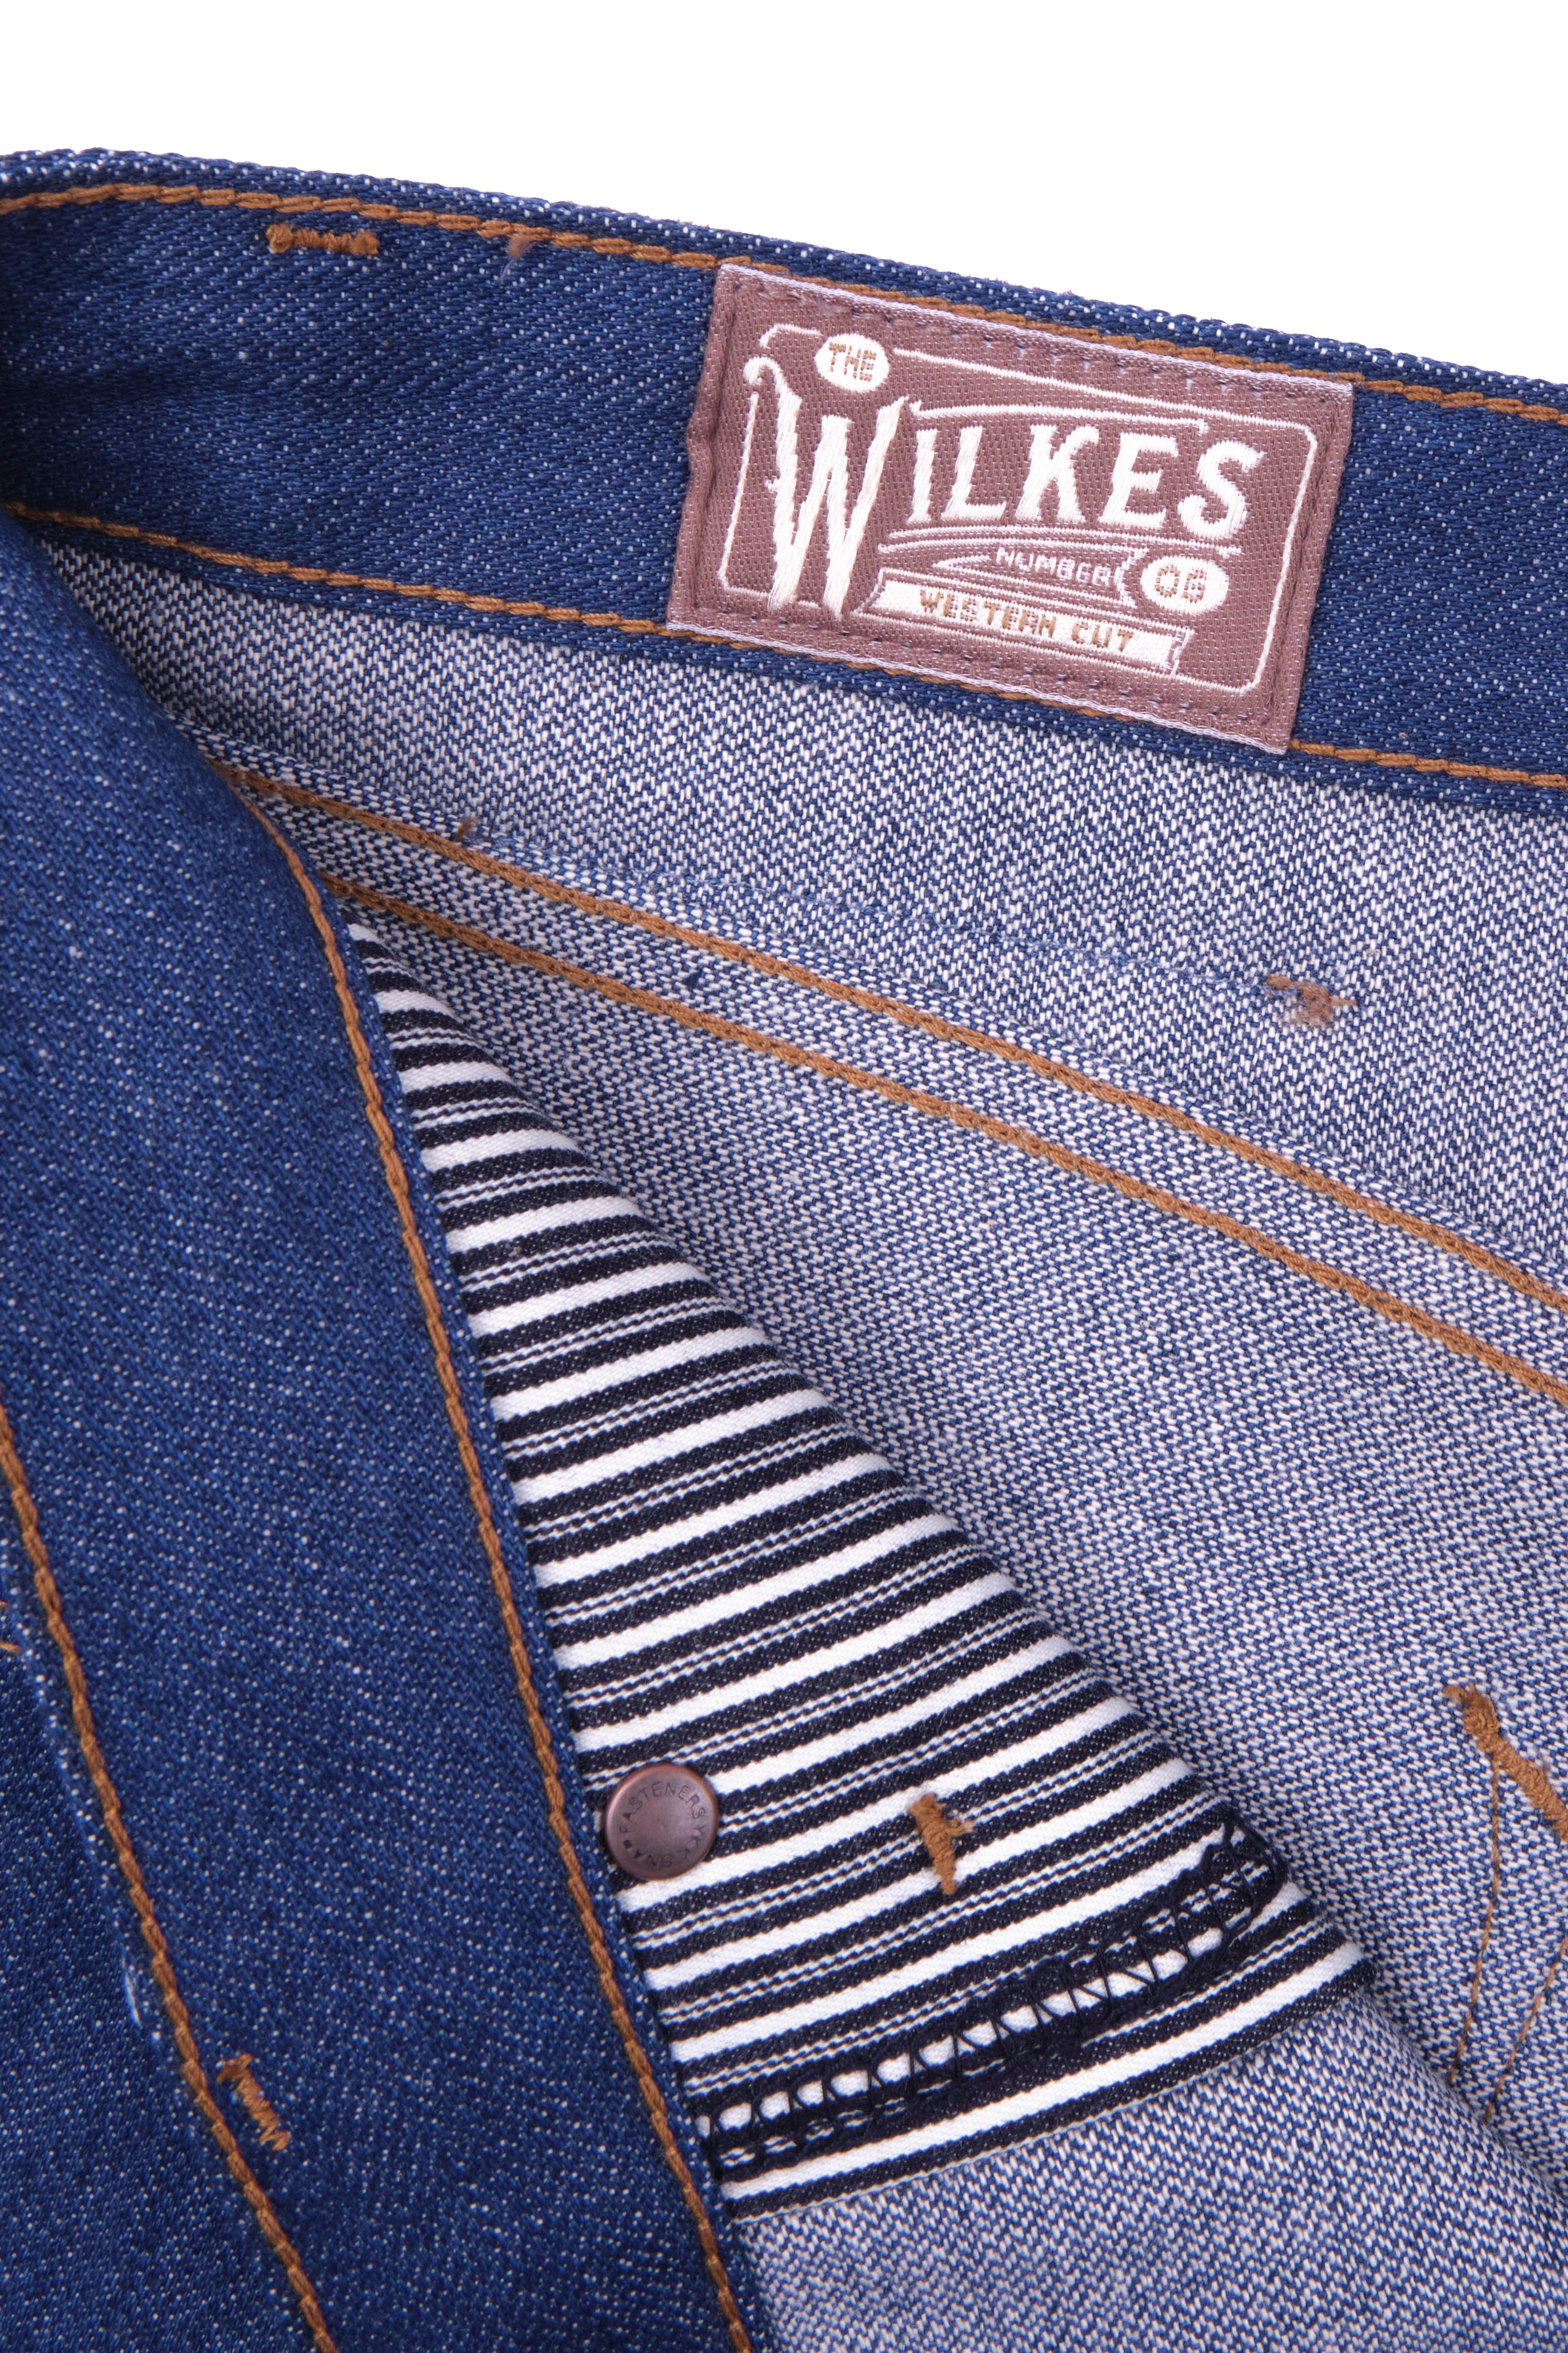 Wilkes Western <span>12 Ounce Vintage Blue Denim </span>